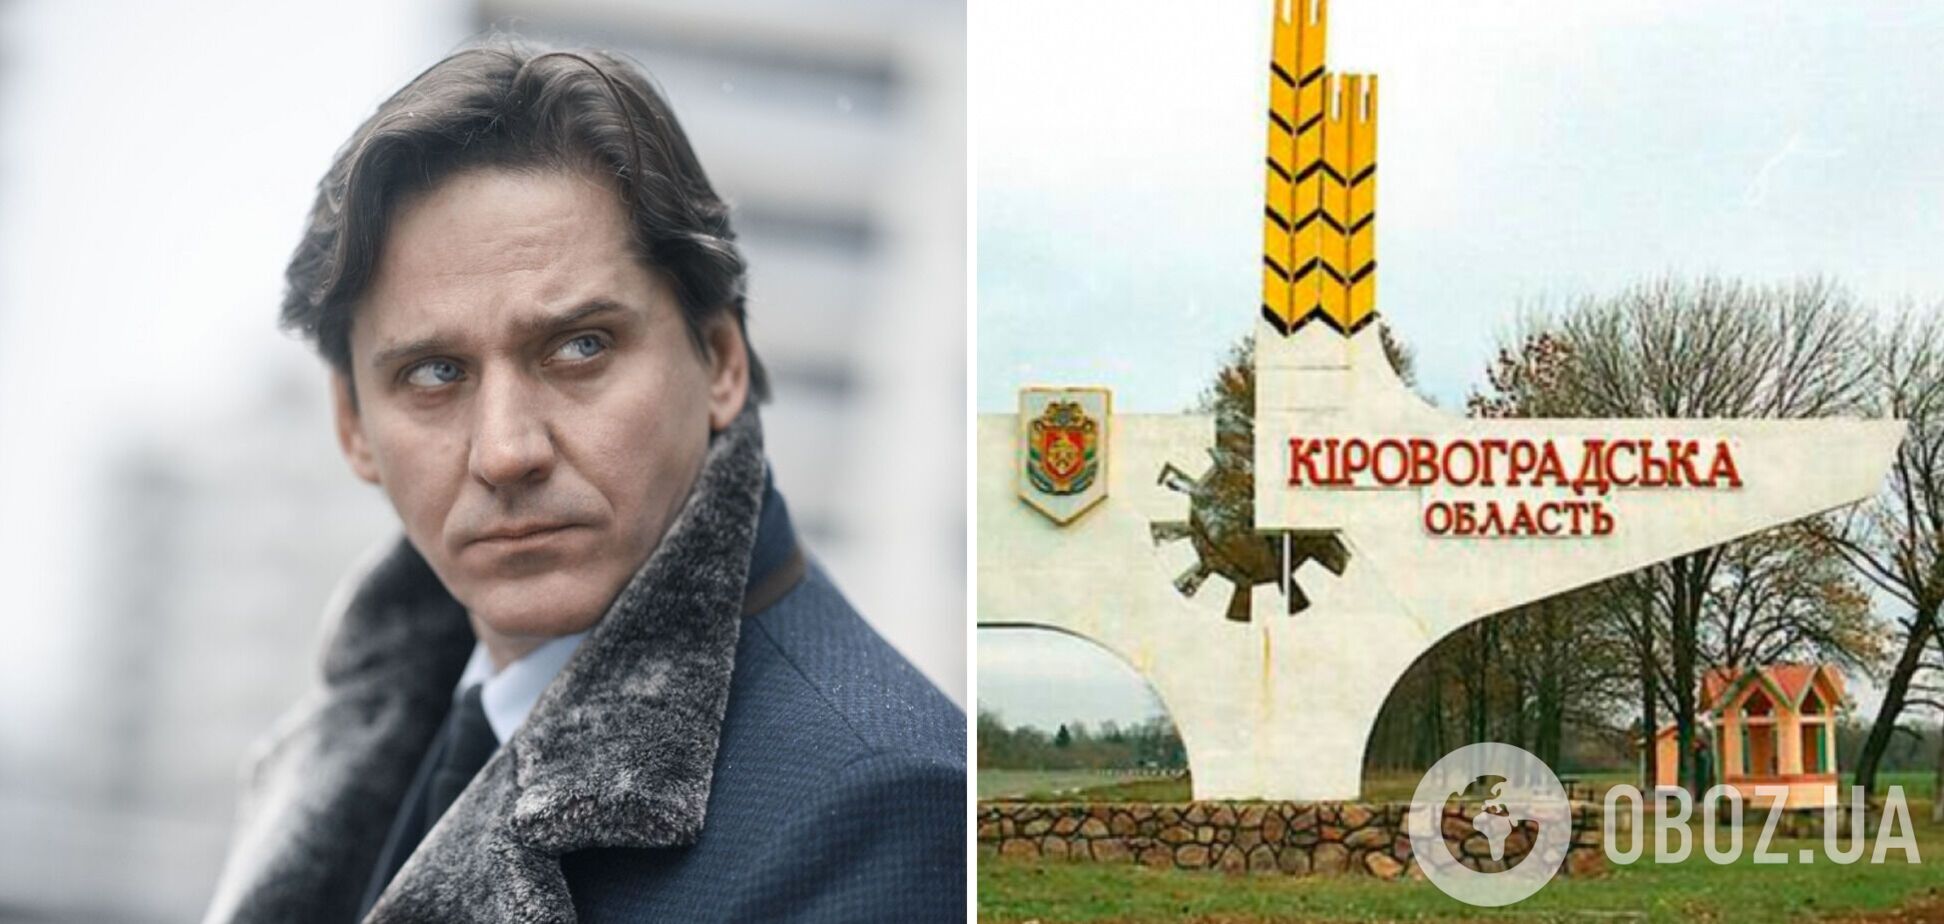 Російський актор Батурін заявив, що його батьки-українці 'в полоні' і вважають його зрадником: не розуміє їхньої позиції